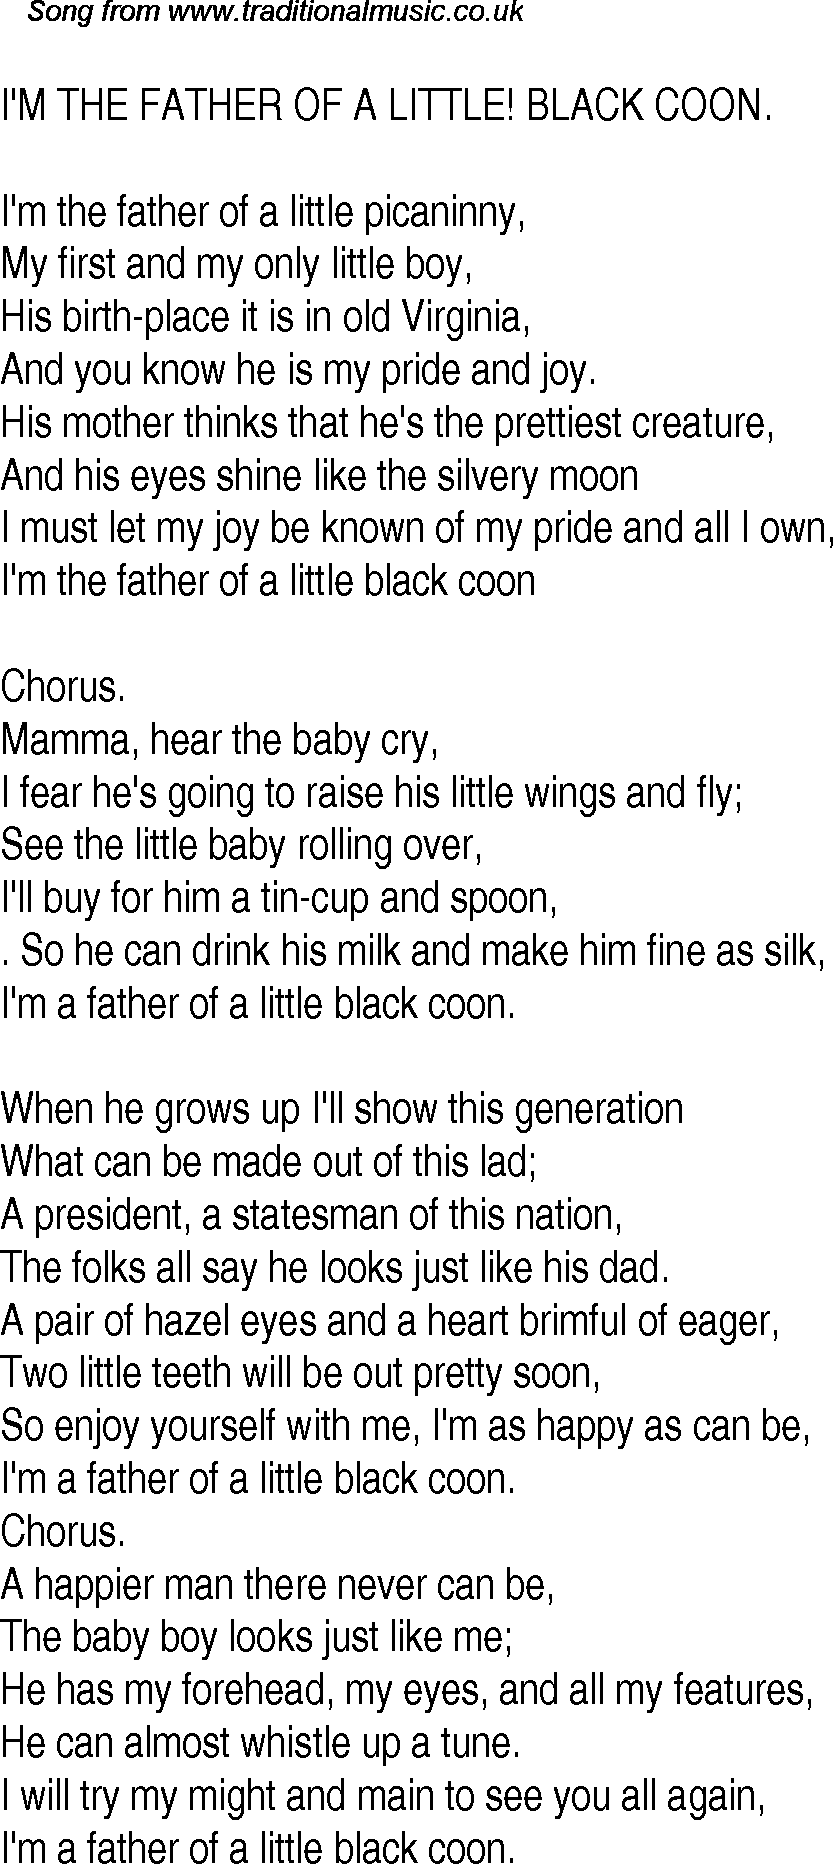 little black boy lyrics